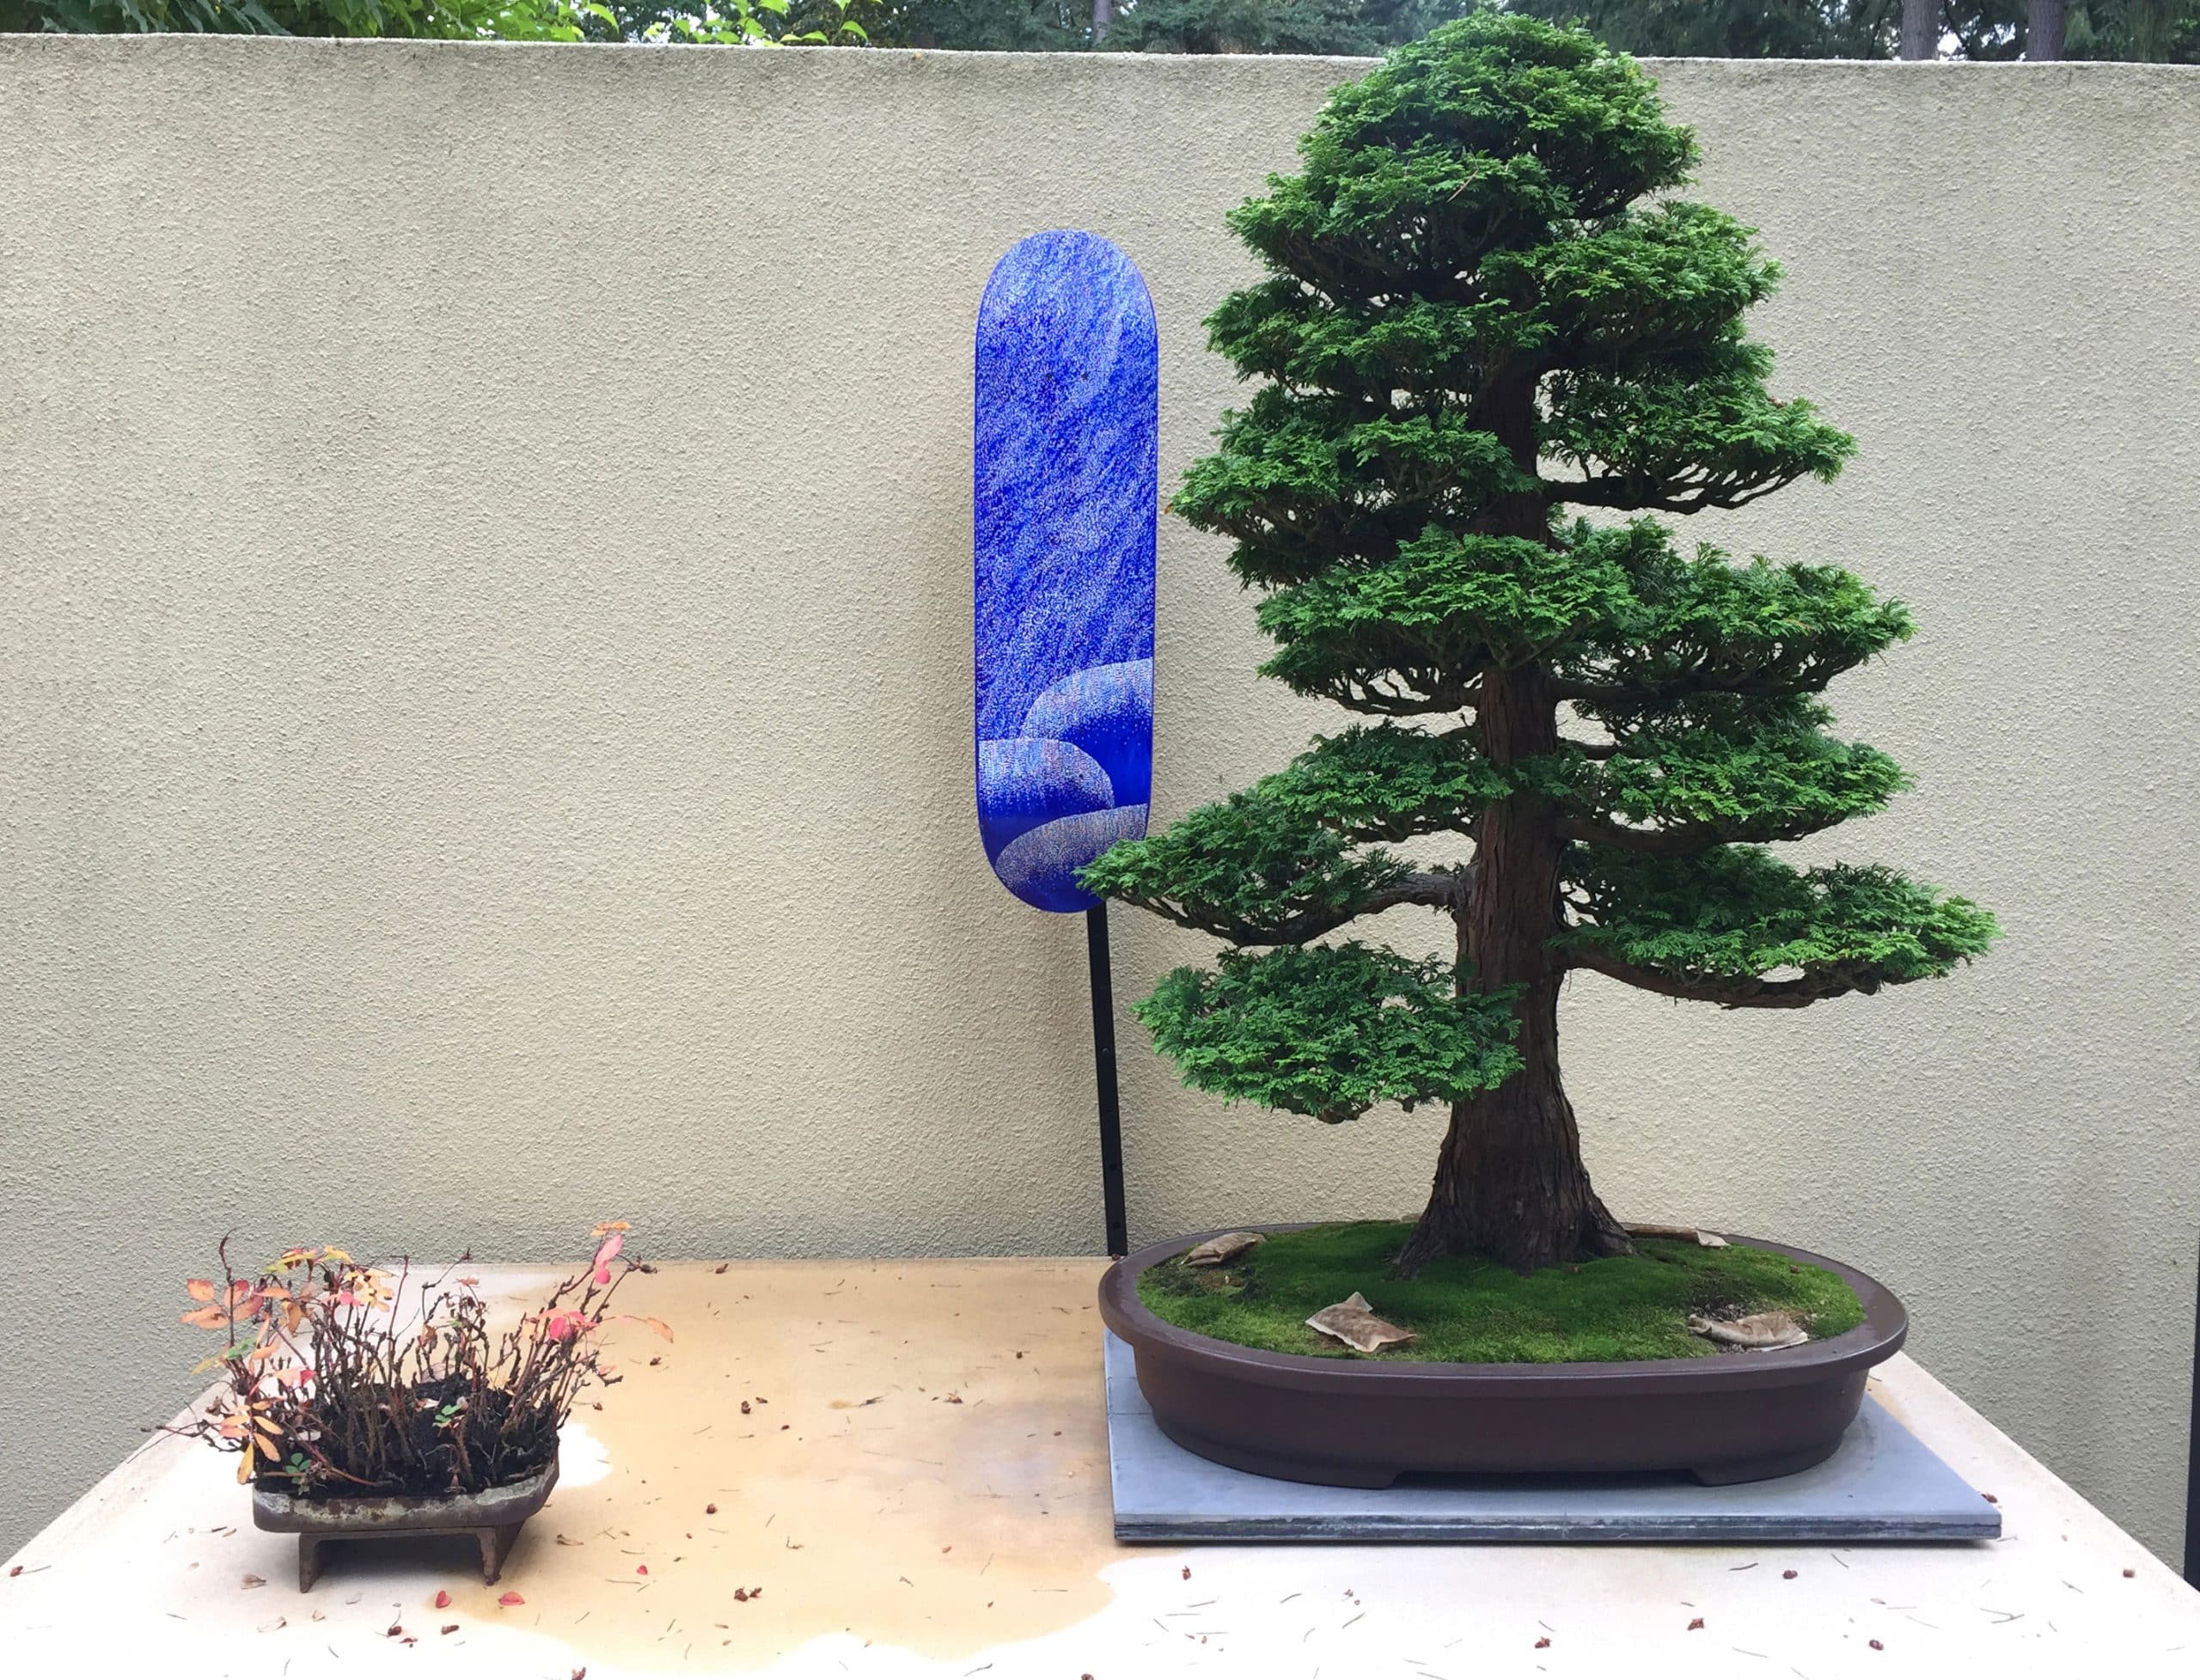 Hinoki Cypress - Chamaecyparis